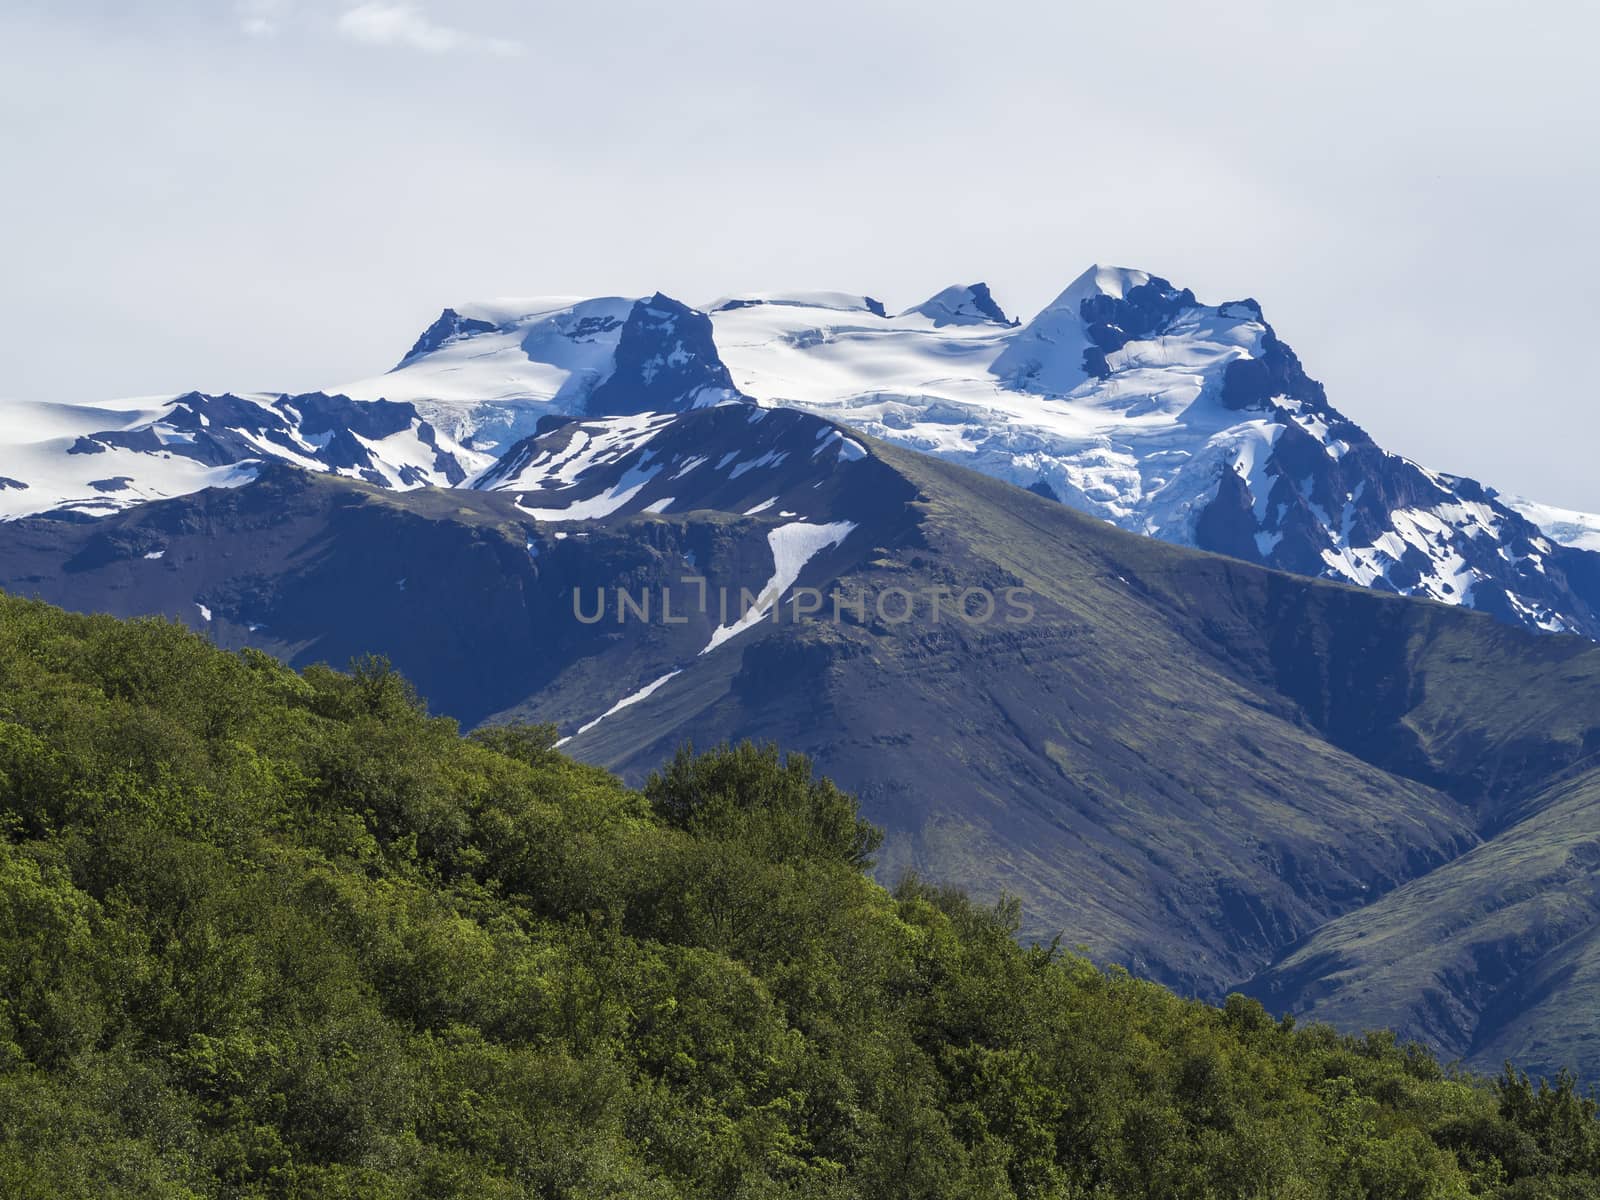 View on top of Hvannadalshnukur peak, highest iceland mountain and green bush, in Vatnajokull National Park